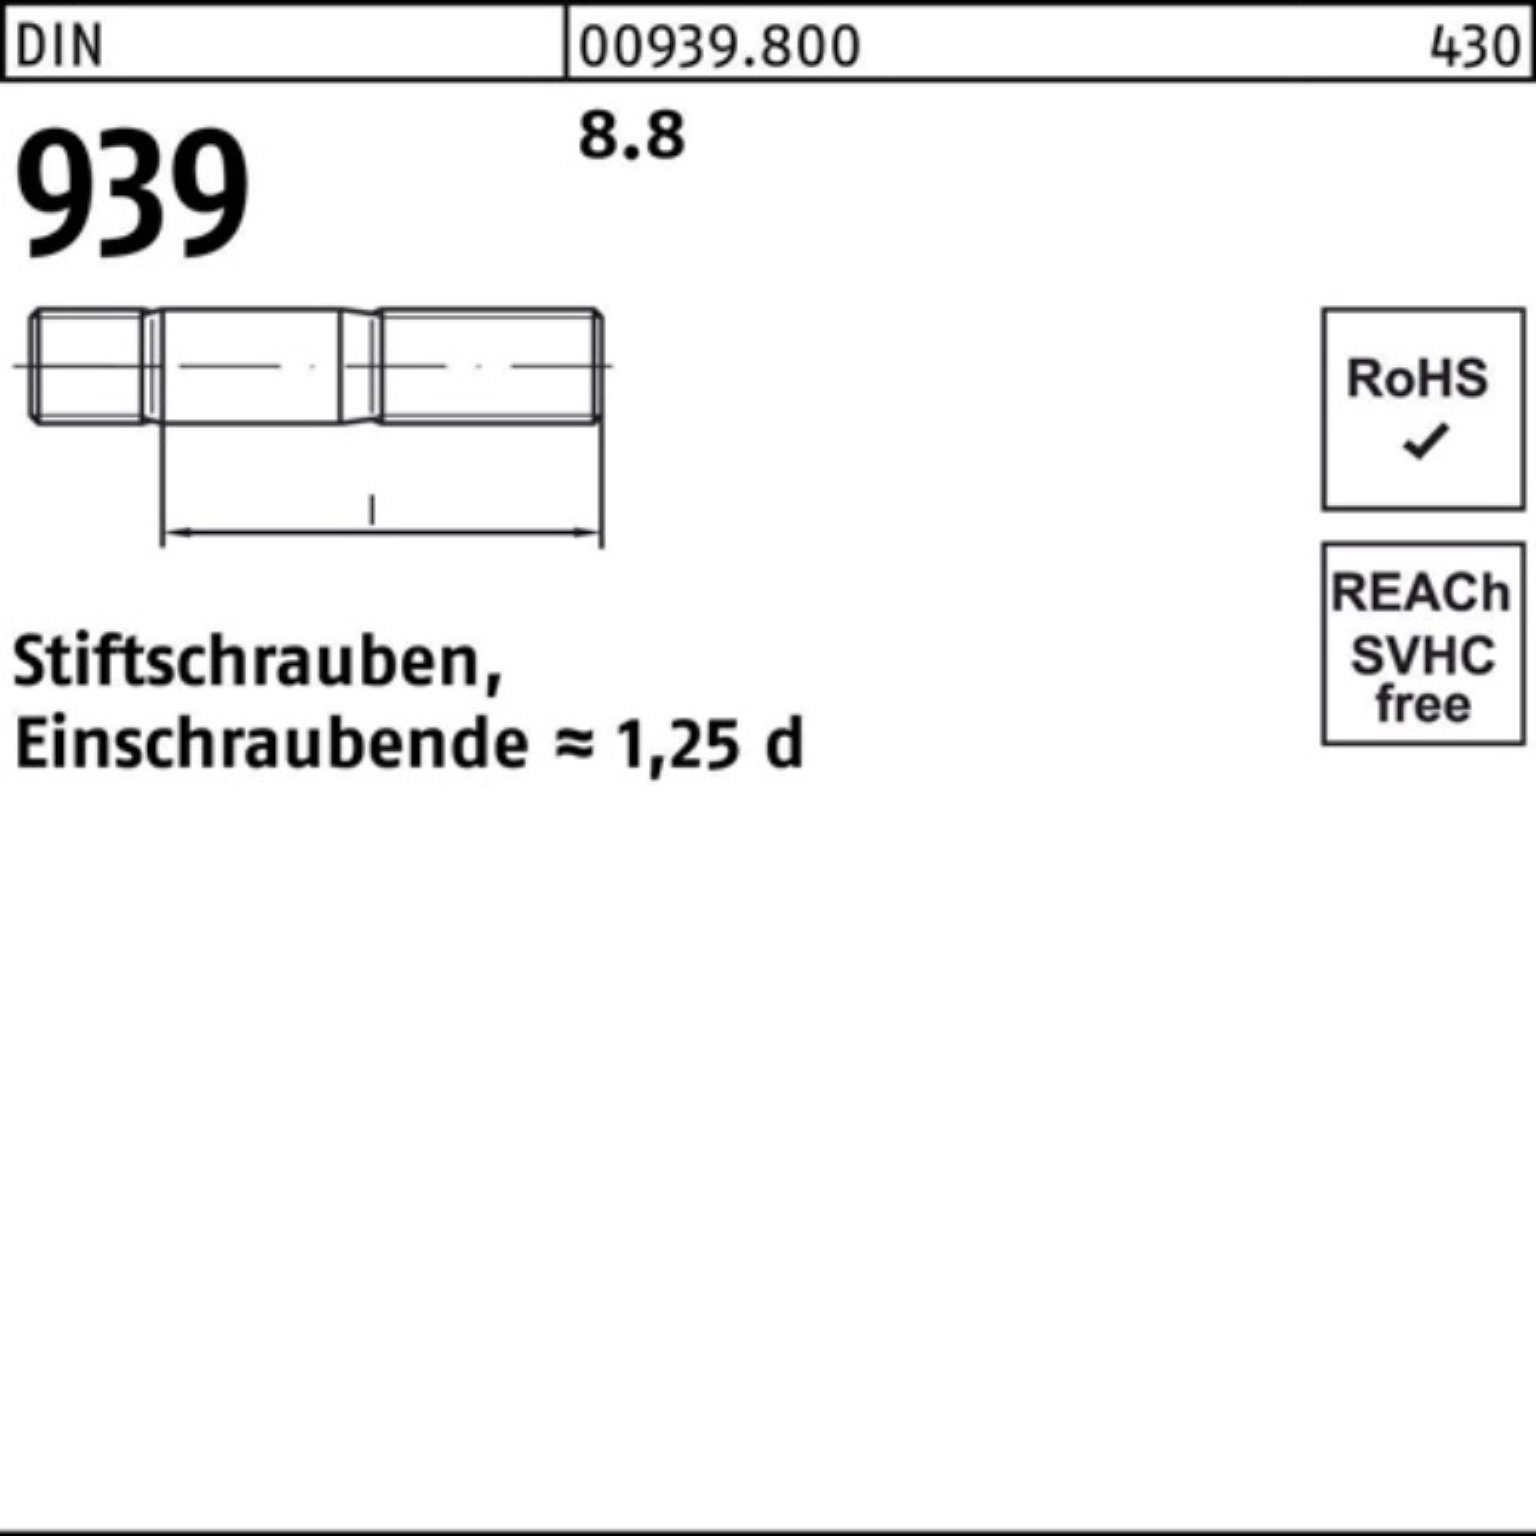 Reyher Stiftschraube 100er Pack Stiftschraube Einschraubende=1,25d DIN M10x 8.8 939 75 S 50